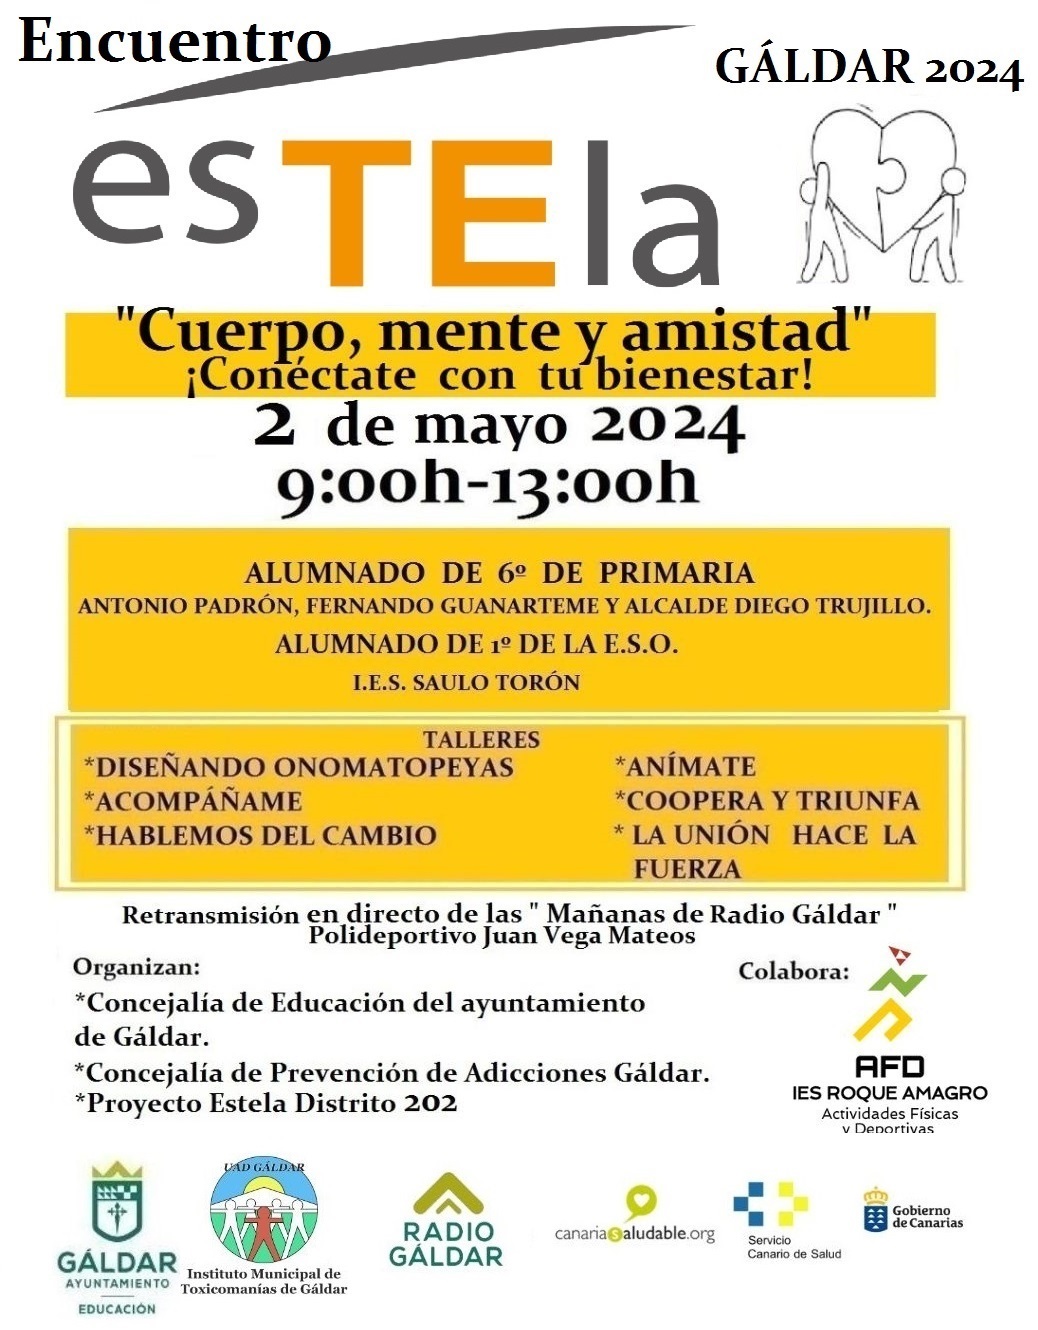 El Ayuntamiento organiza este jueves el Encuentro Estela, que desarrolla talleres con alumnado del municipio